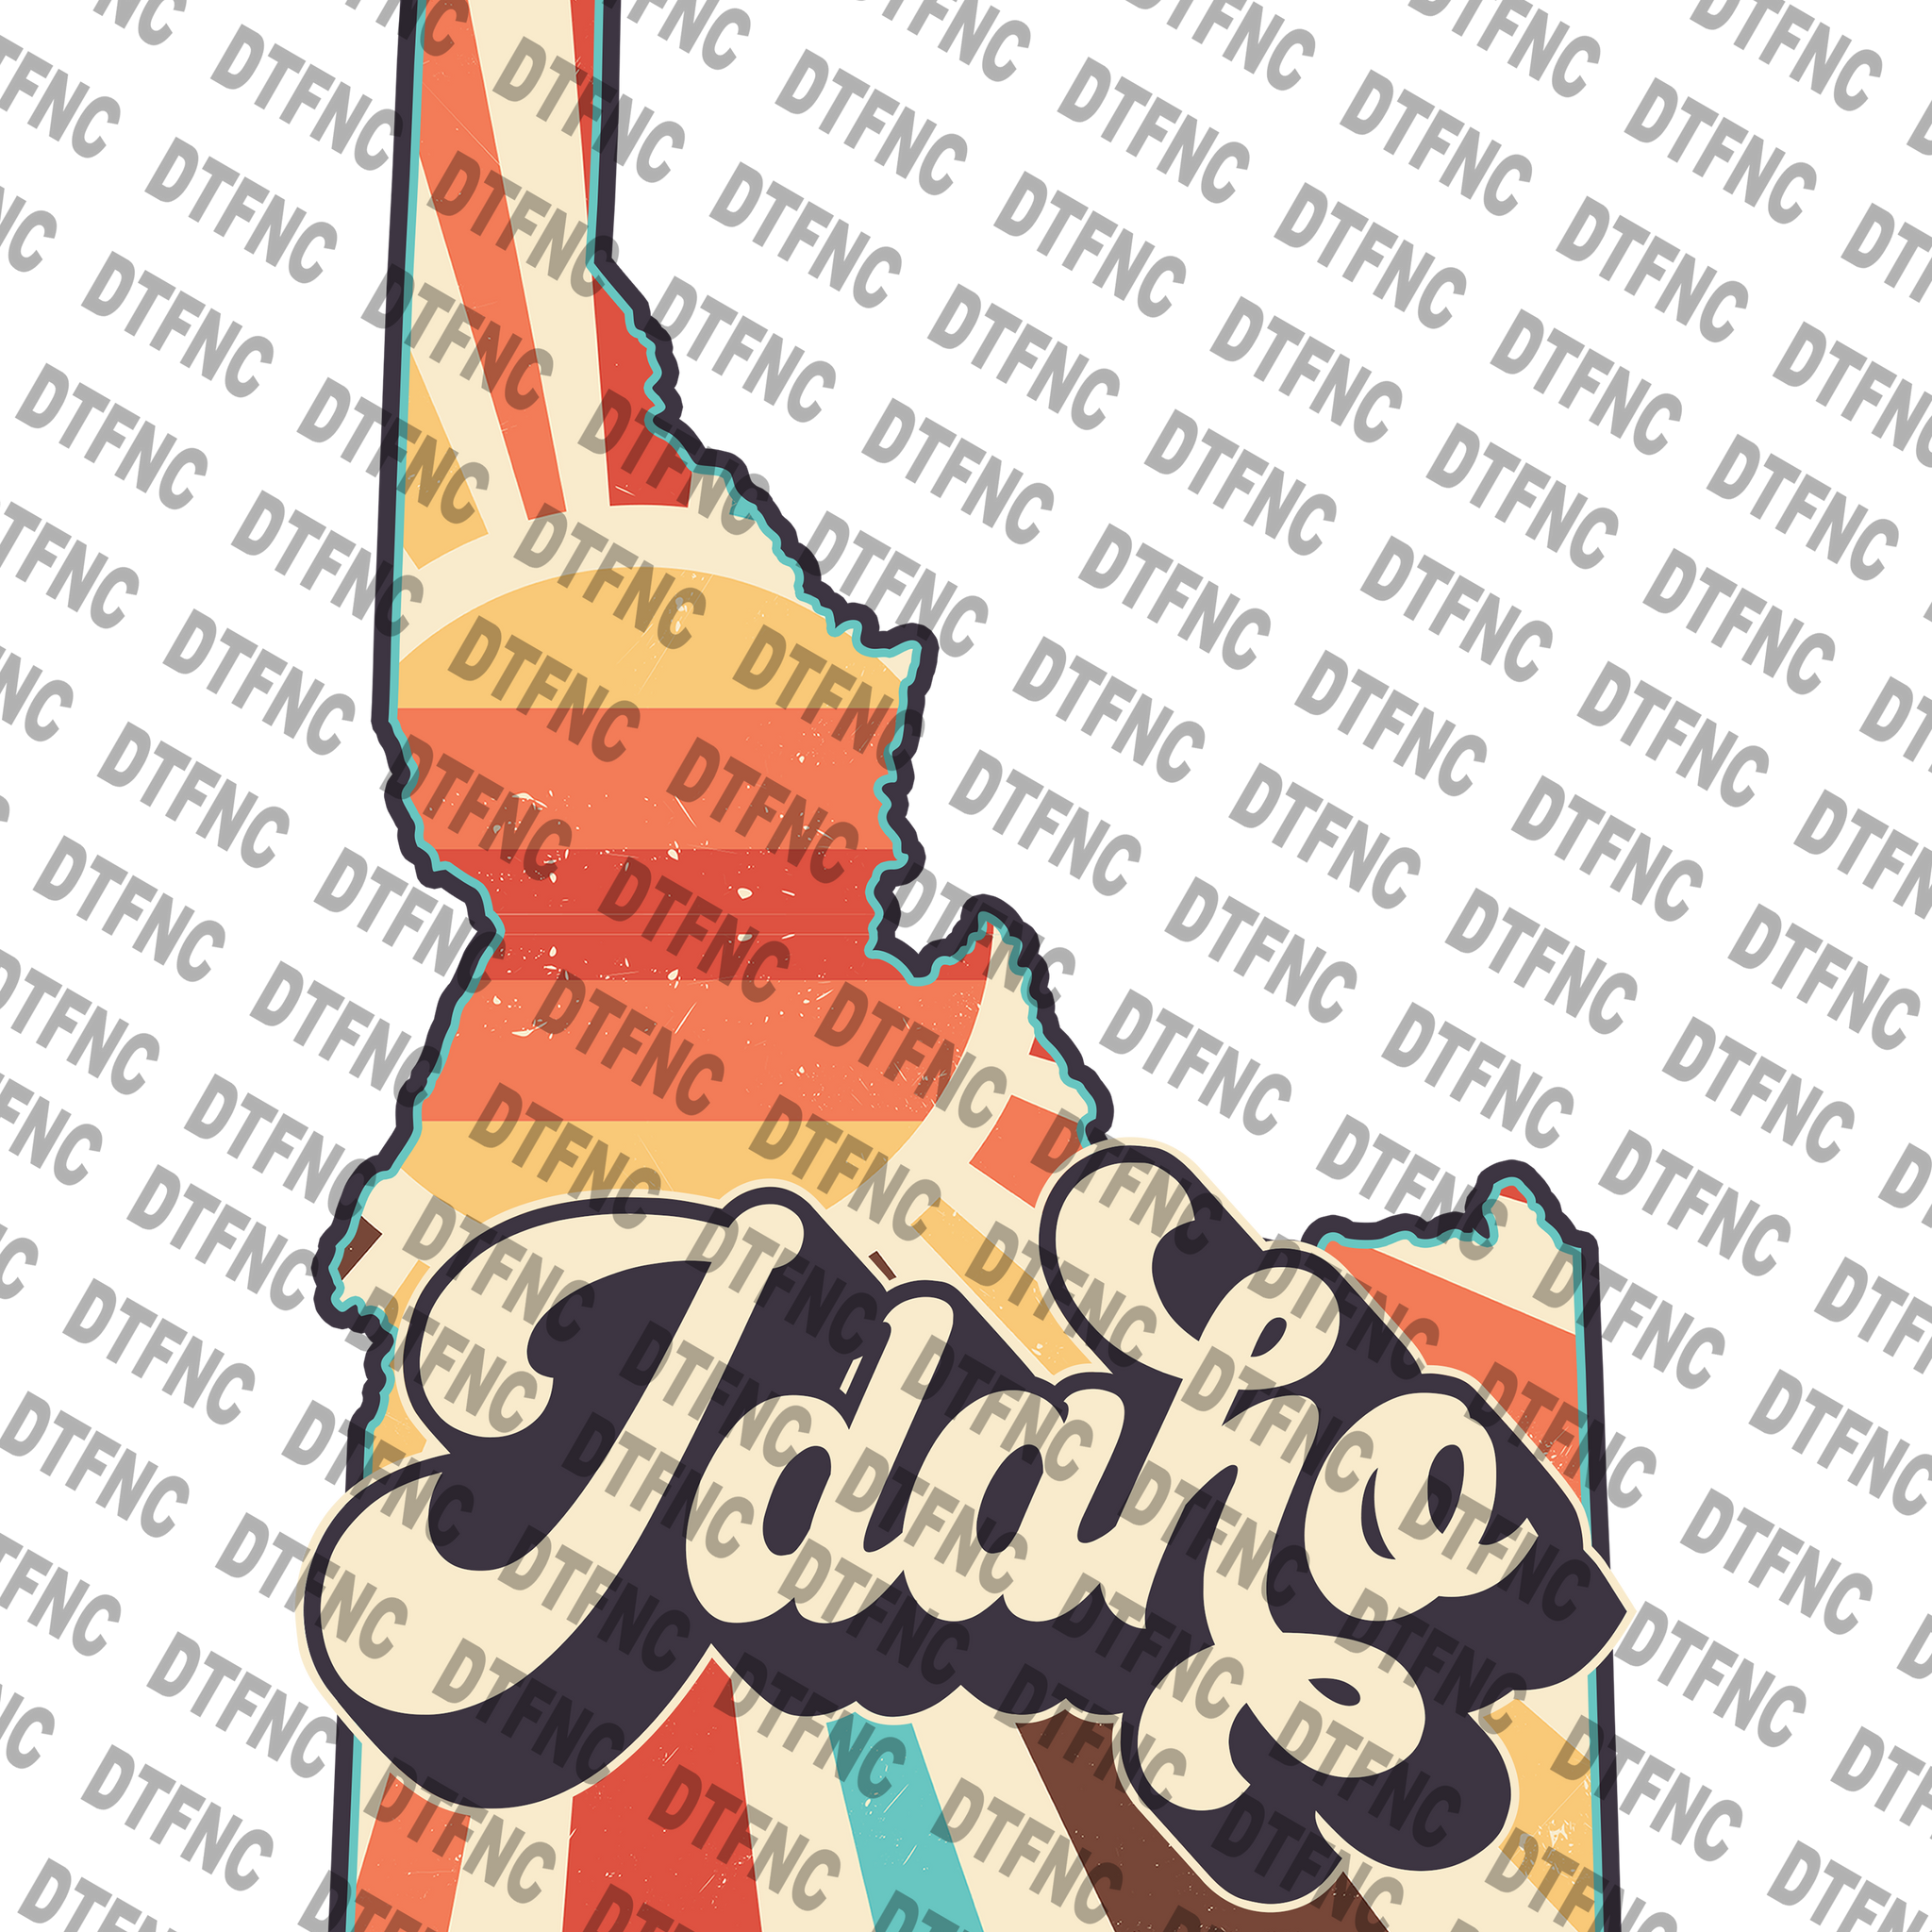 State - Idaho